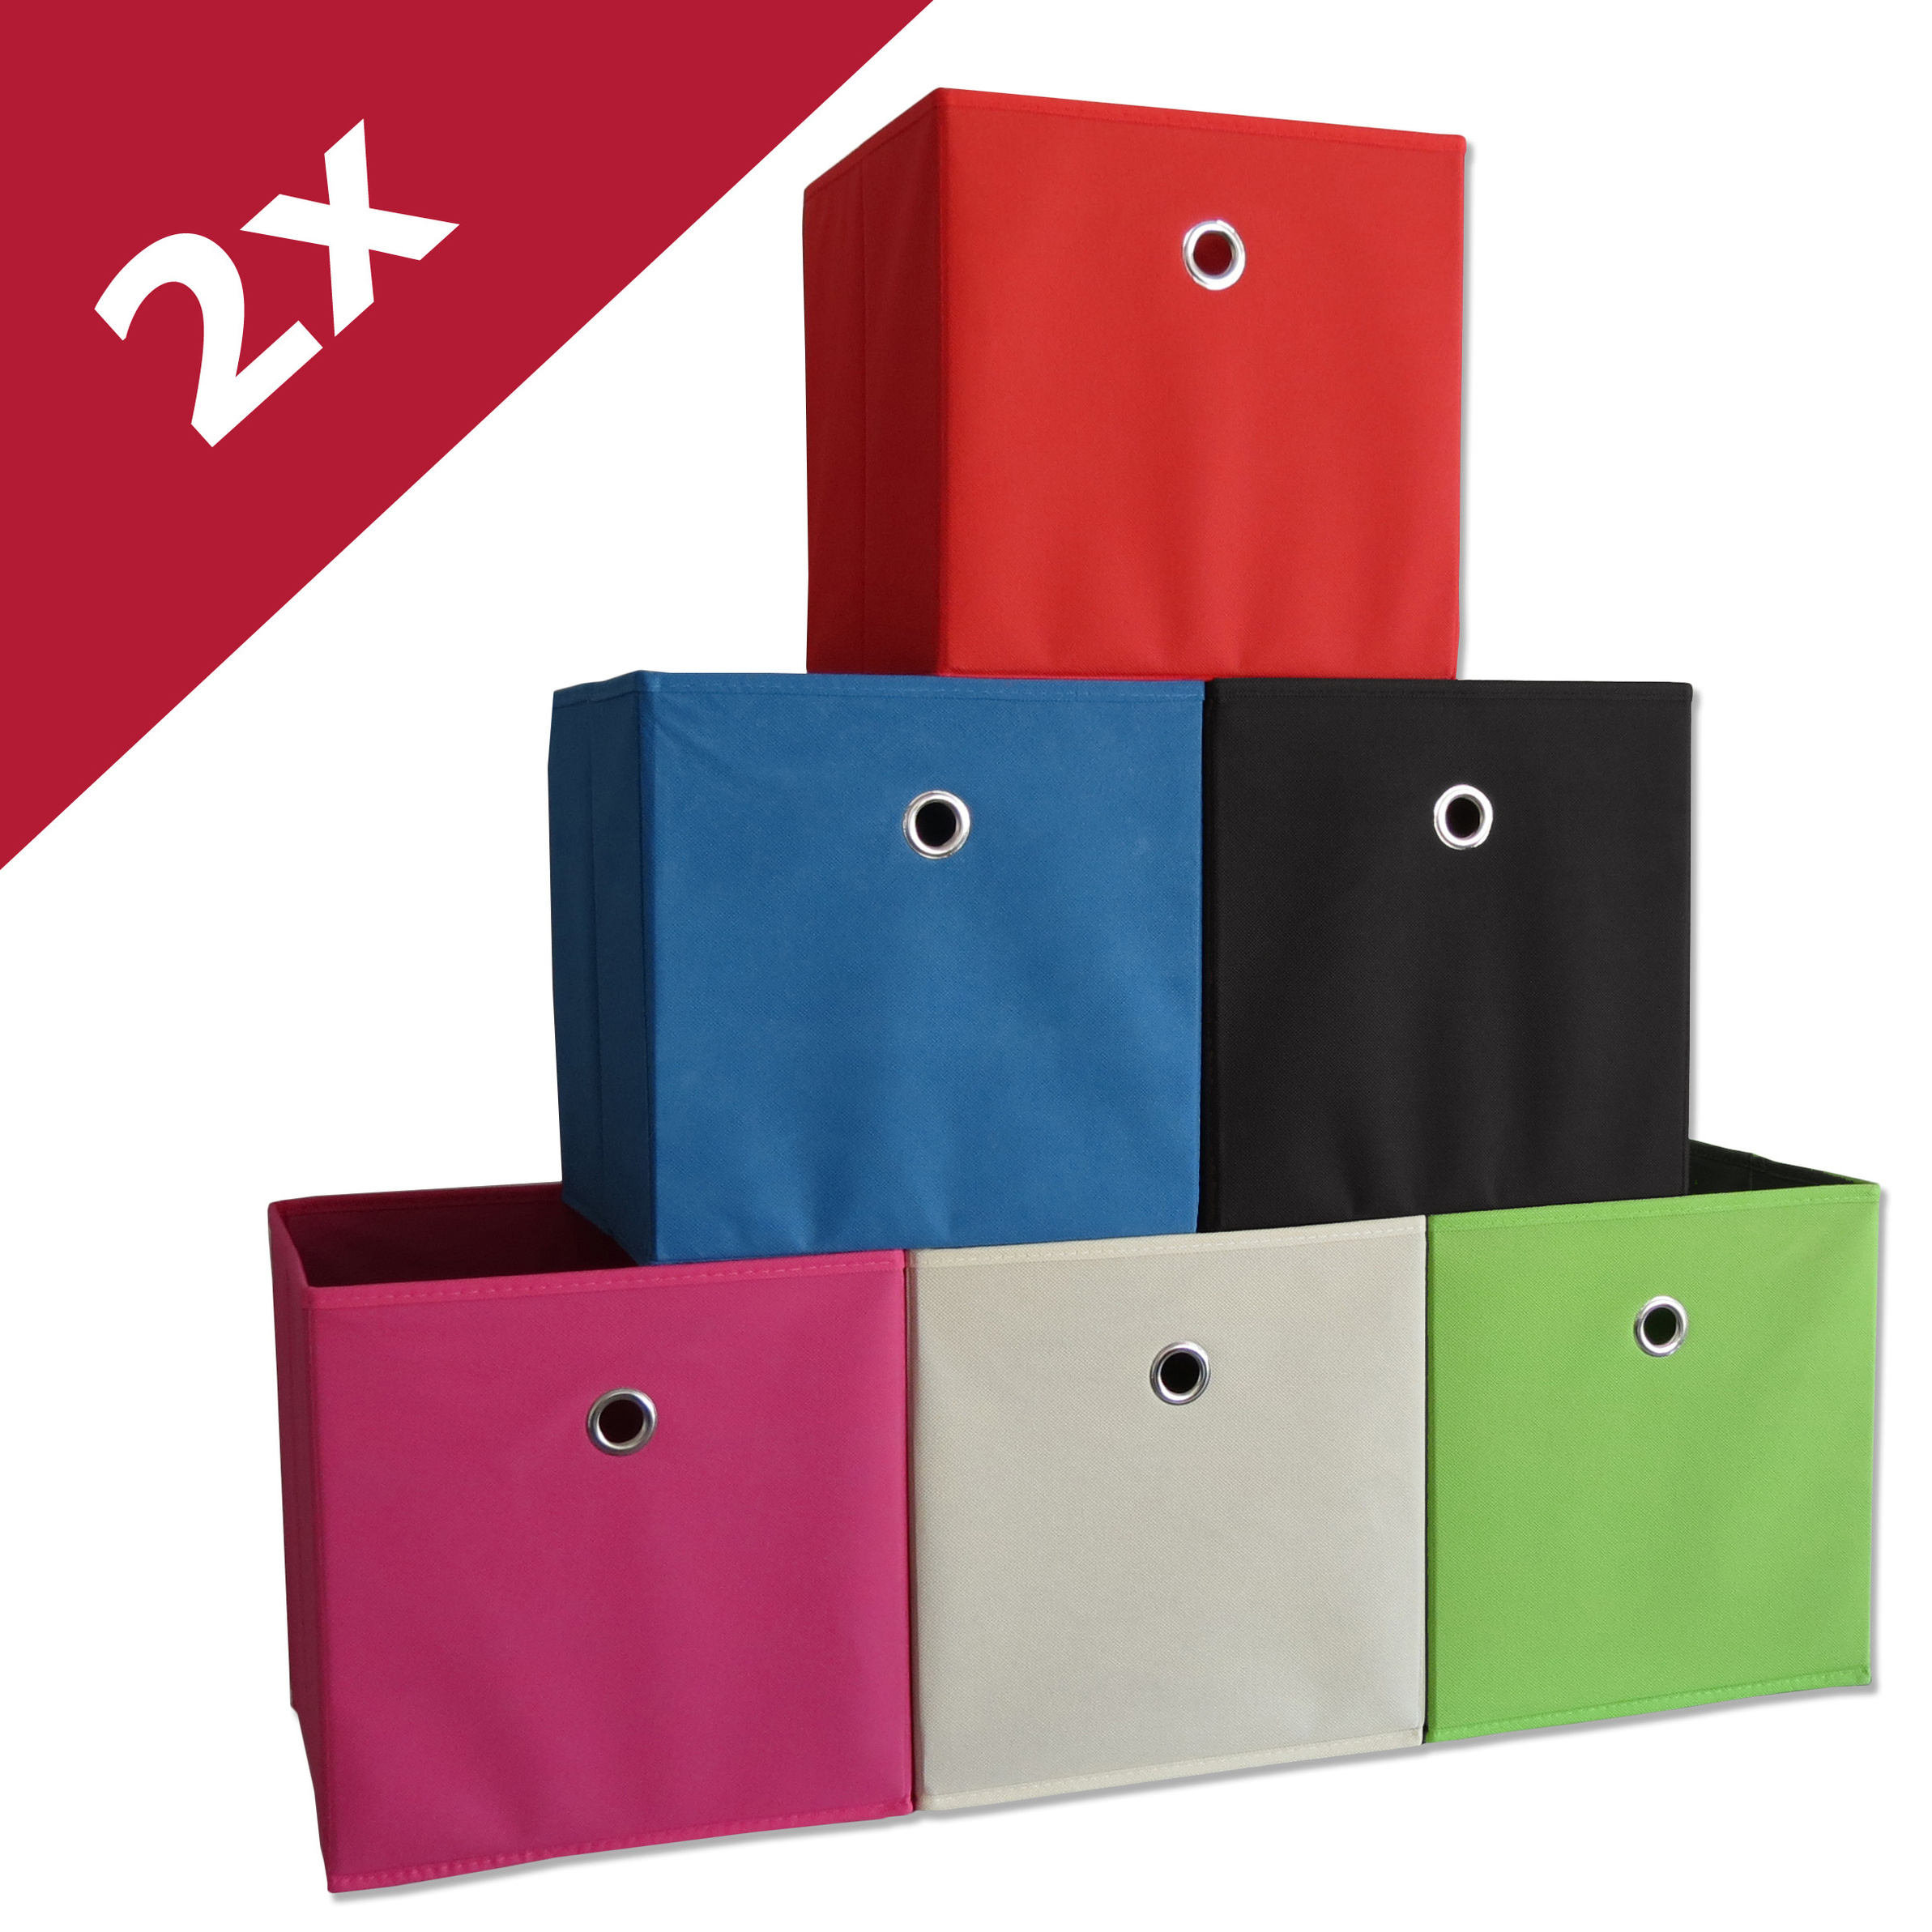 https://i.weltbild.de/p/vcm-2er-set-faltbox-boxas-farbe-weiss-natur-334941213.jpg?v=1&wp=_max